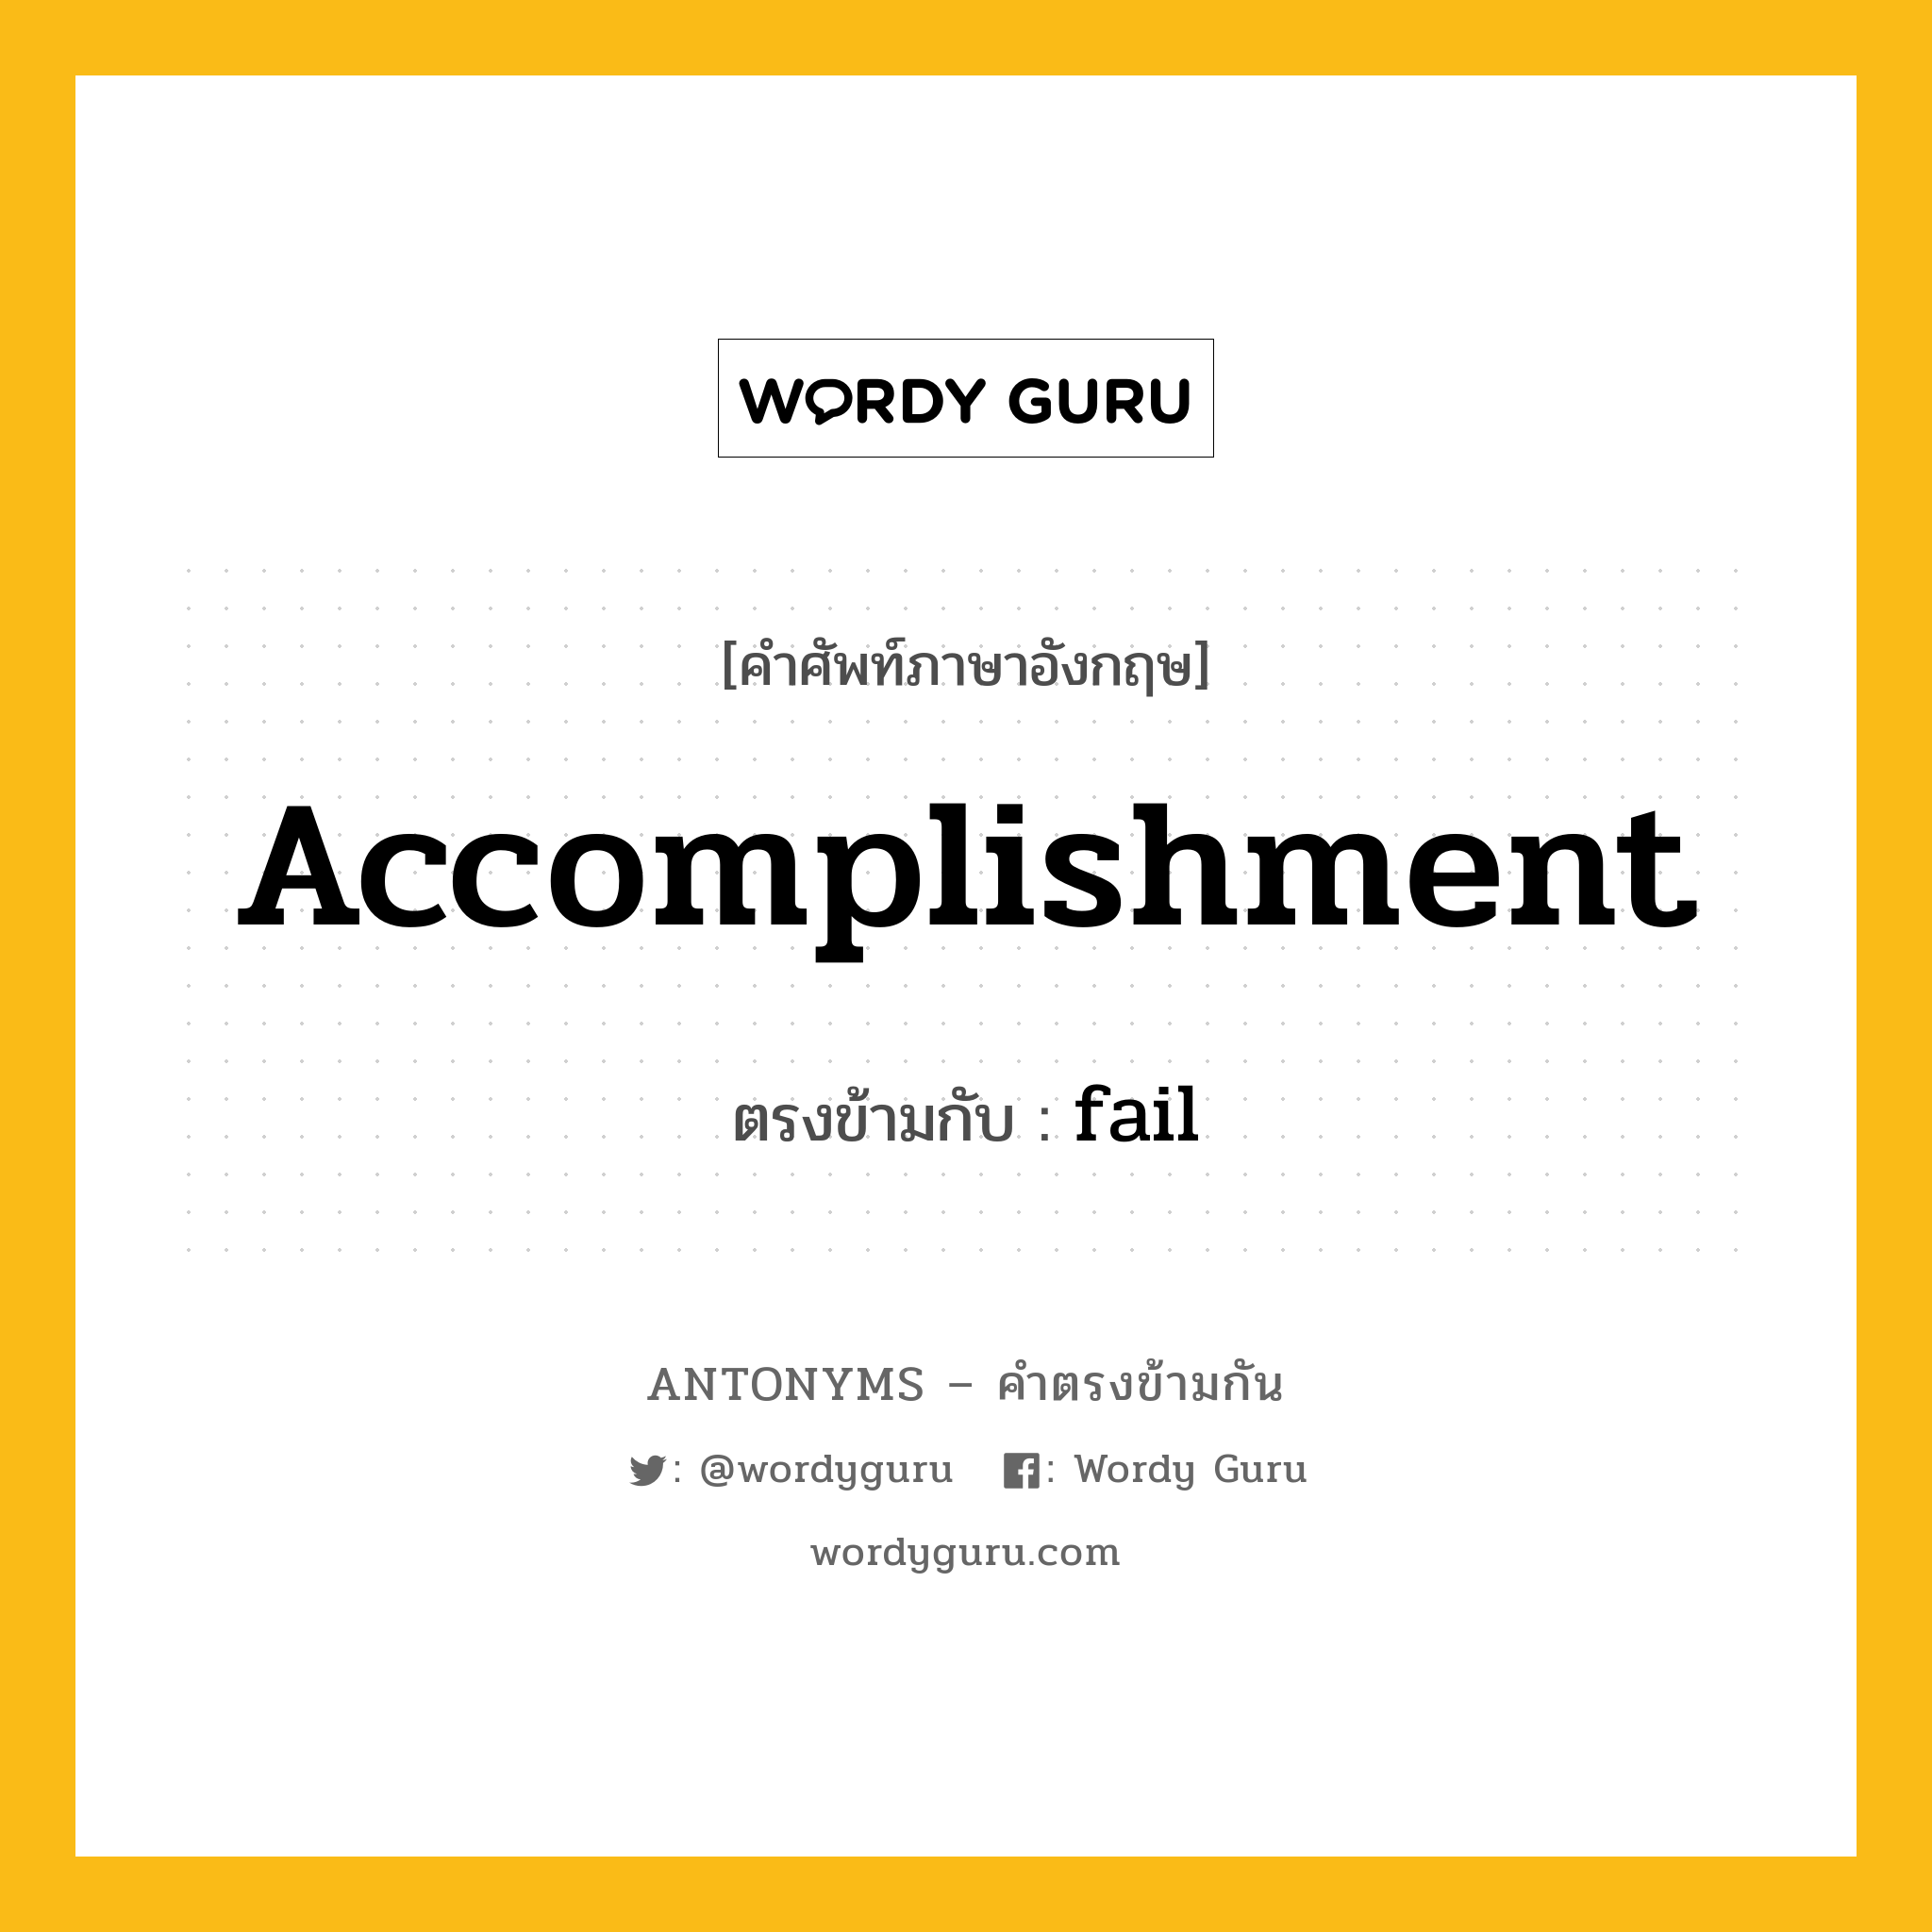 accomplishment เป็นคำตรงข้ามกับคำไหนบ้าง?, คำศัพท์ภาษาอังกฤษ accomplishment ตรงข้ามกับ fail หมวด fail